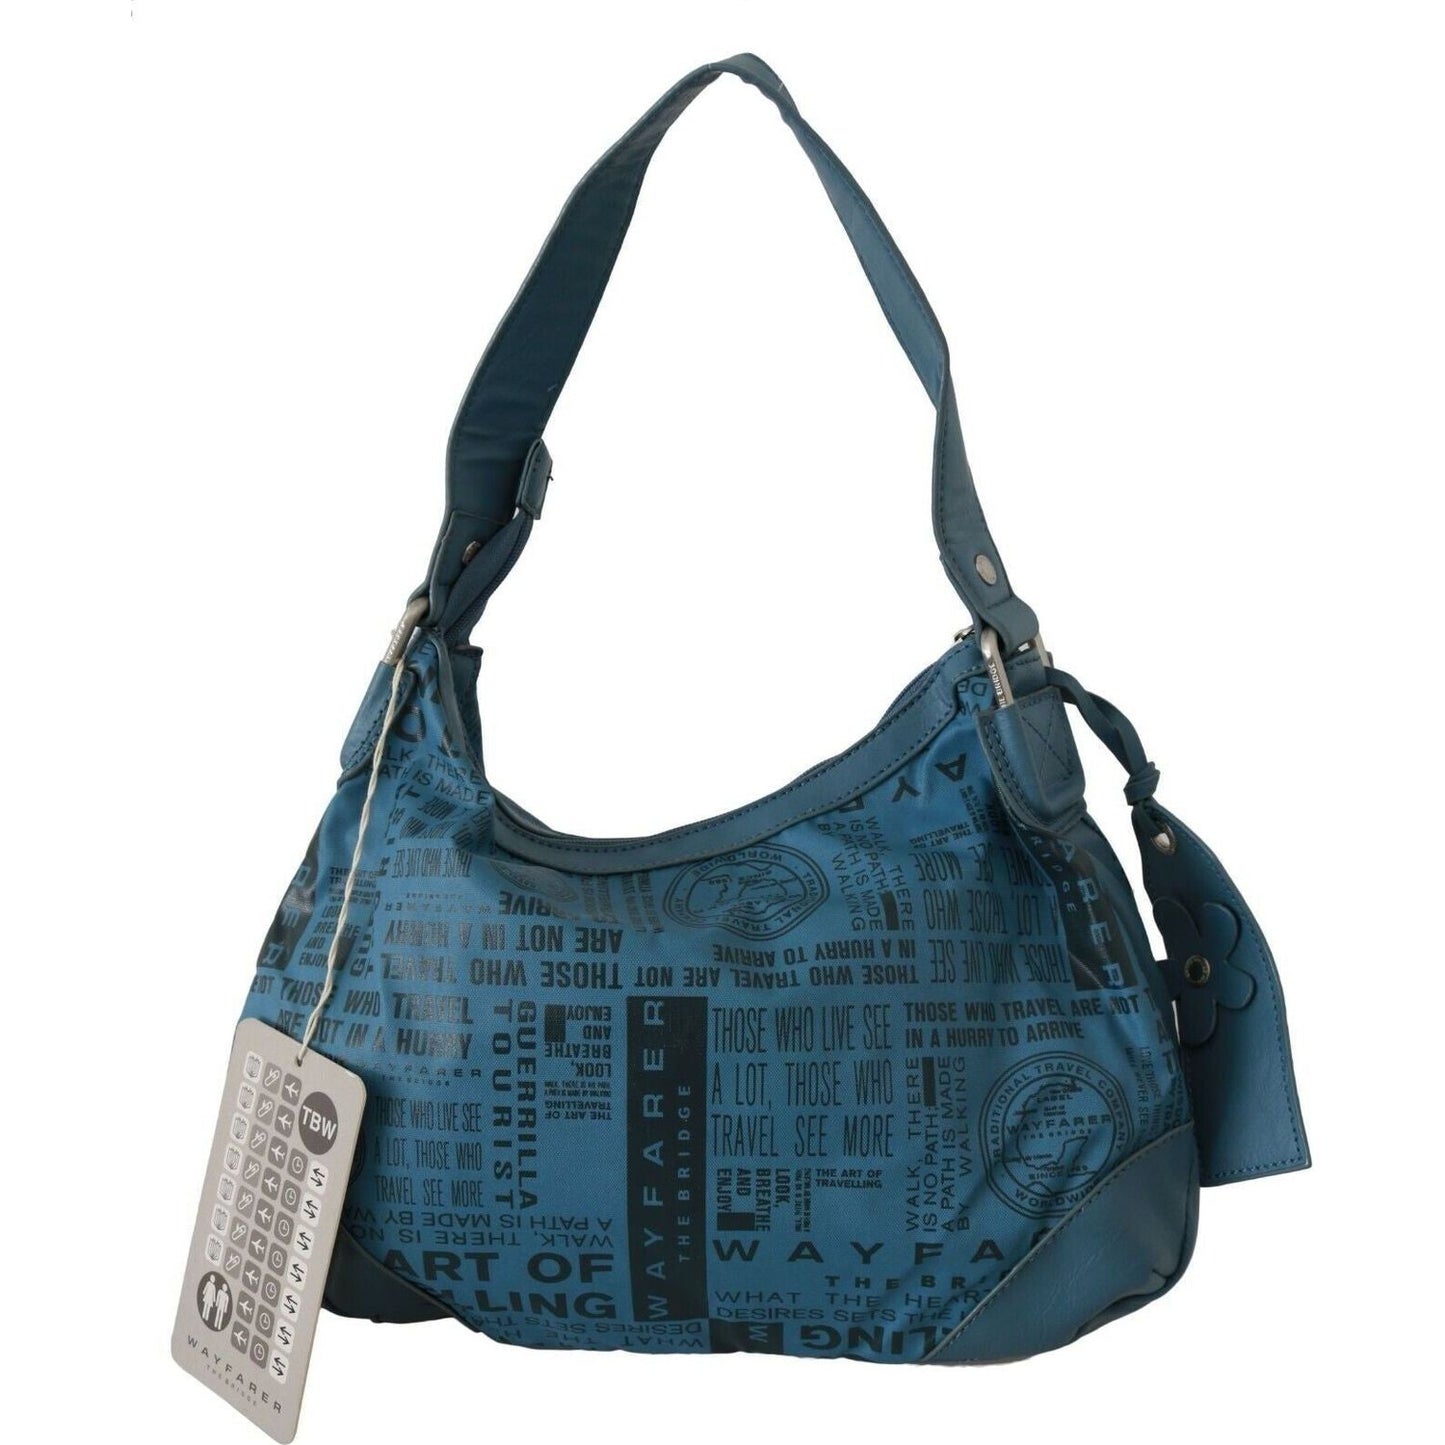 WAYFARER Chic Blue Fabric Shoulder Bag - Perfect for Everyday Elegance WOMAN SHOULDER BAGS shoulder-handbag-printed-purse-women-blue